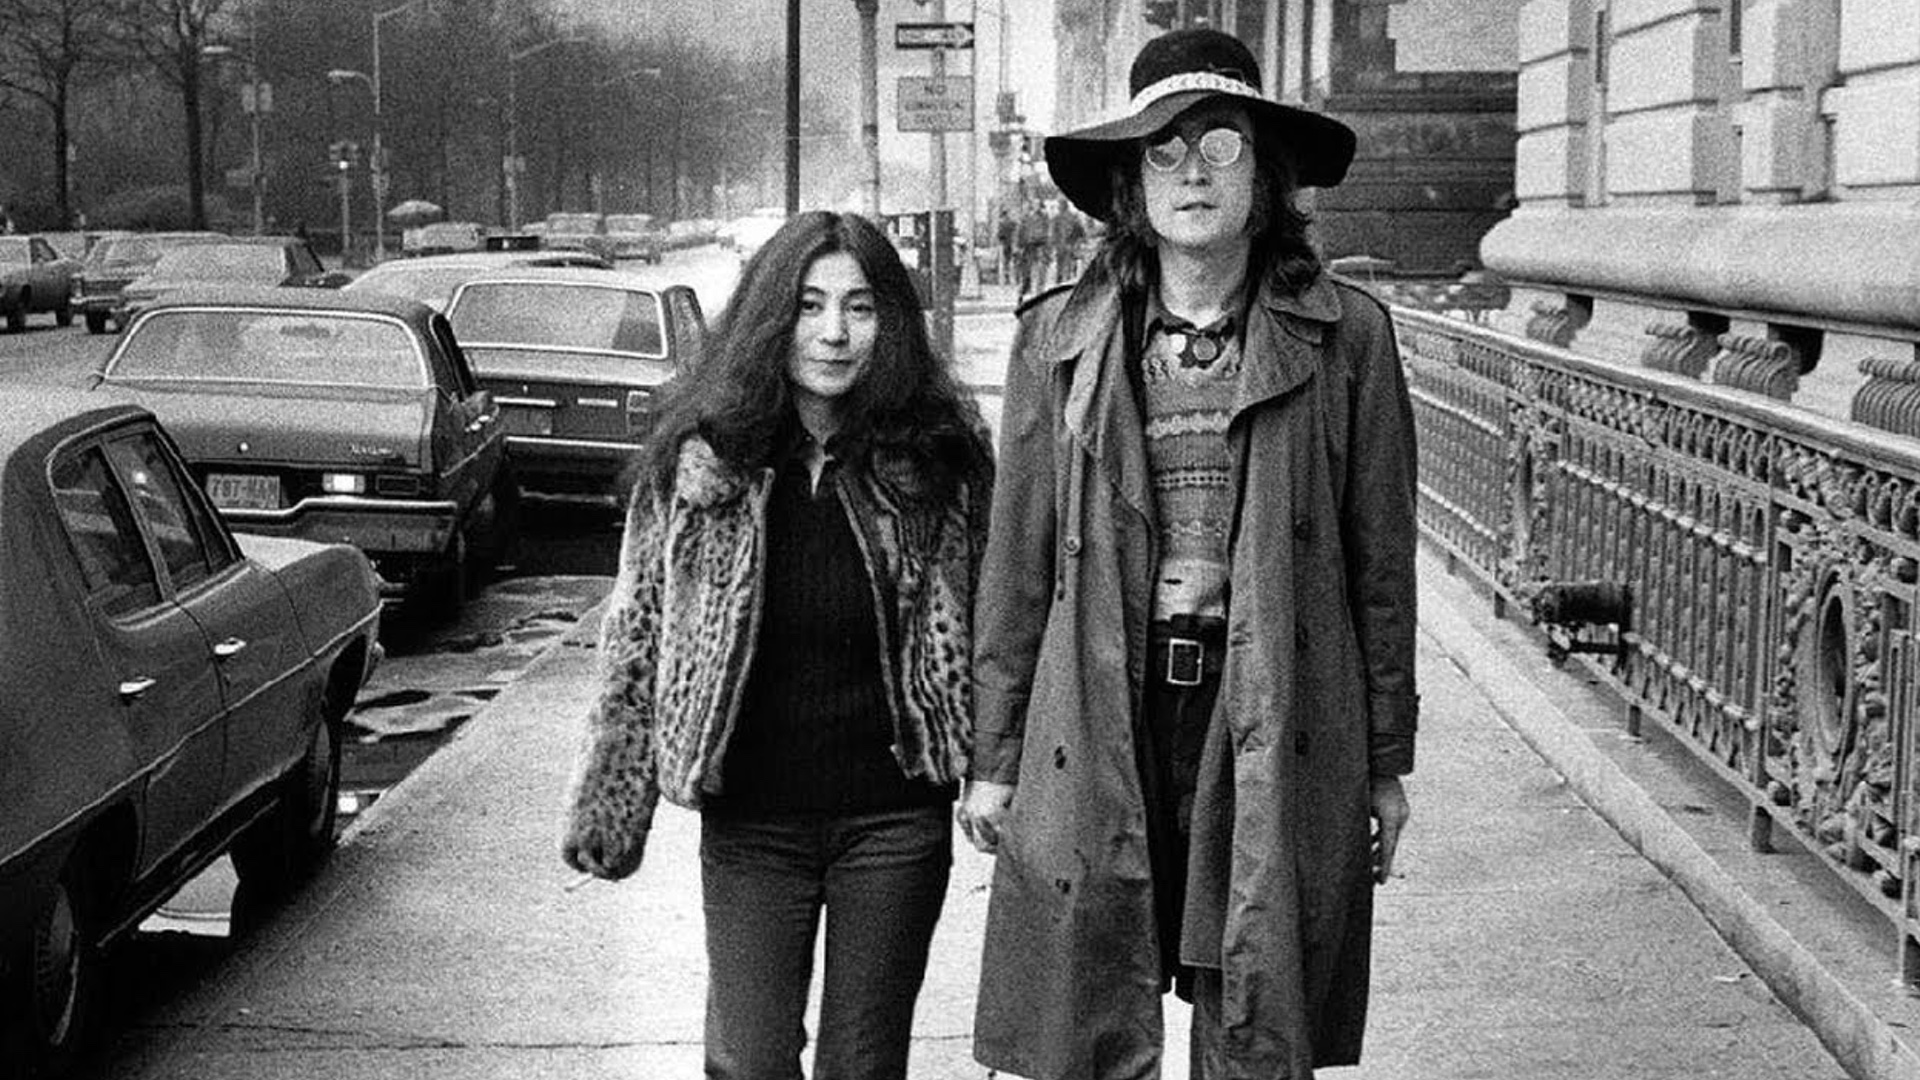 Imagine | Documentário de John Lennon e Yoko Ono ganha trailer com momentos icônicos do casal